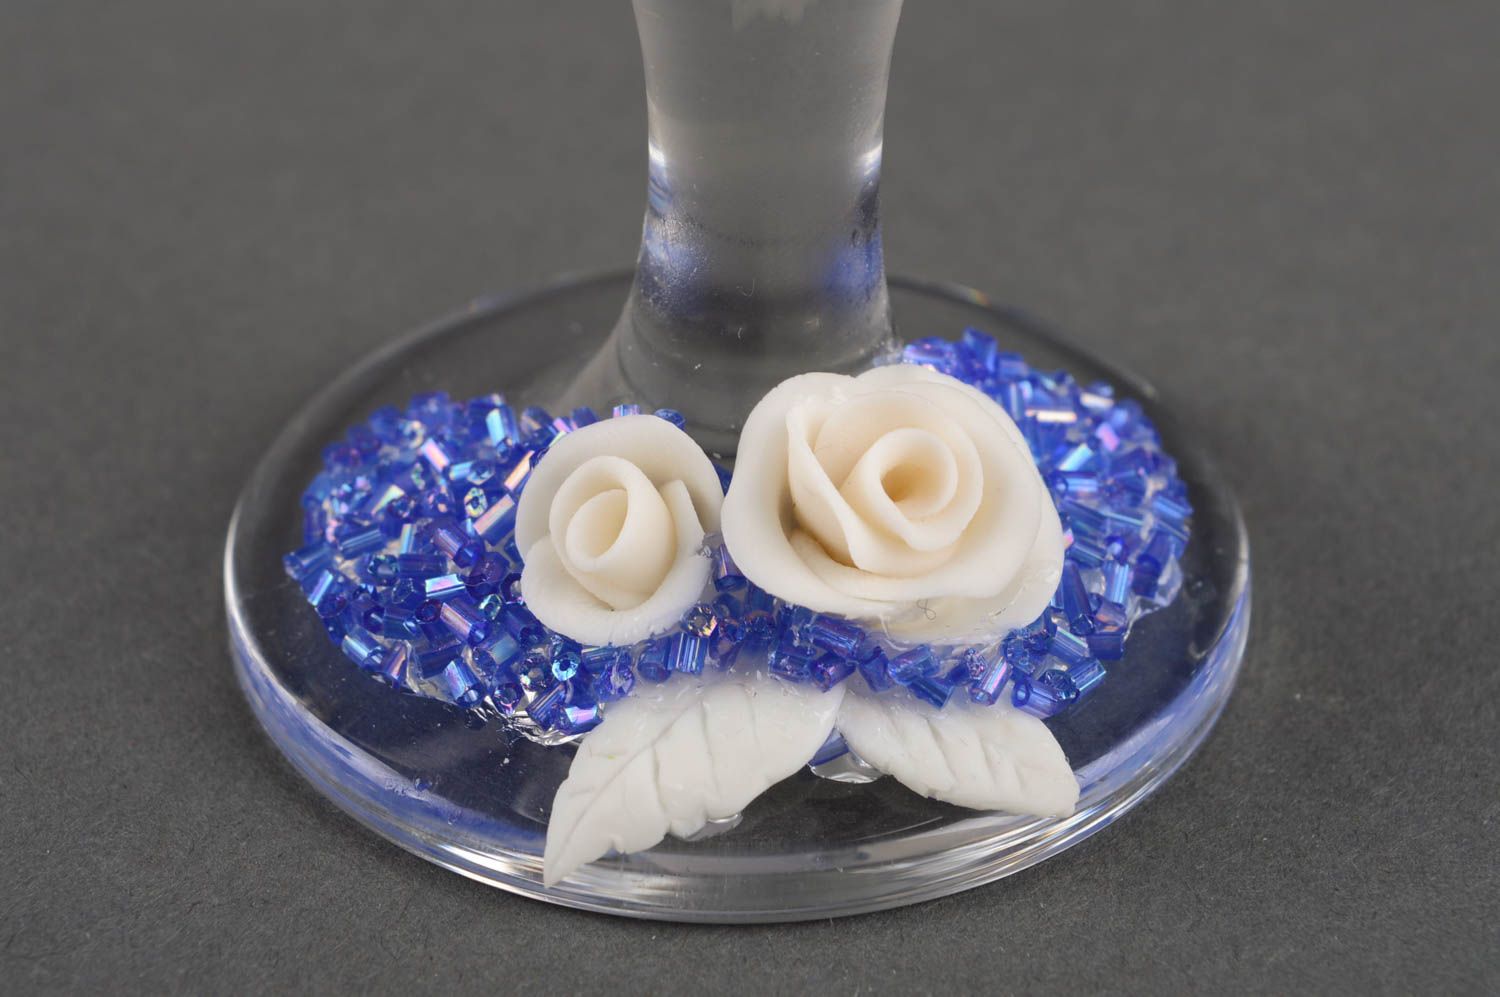 Verres à pied Vaisselle en verre fait main roses blanches Cadeau mariage 2 pcs photo 3